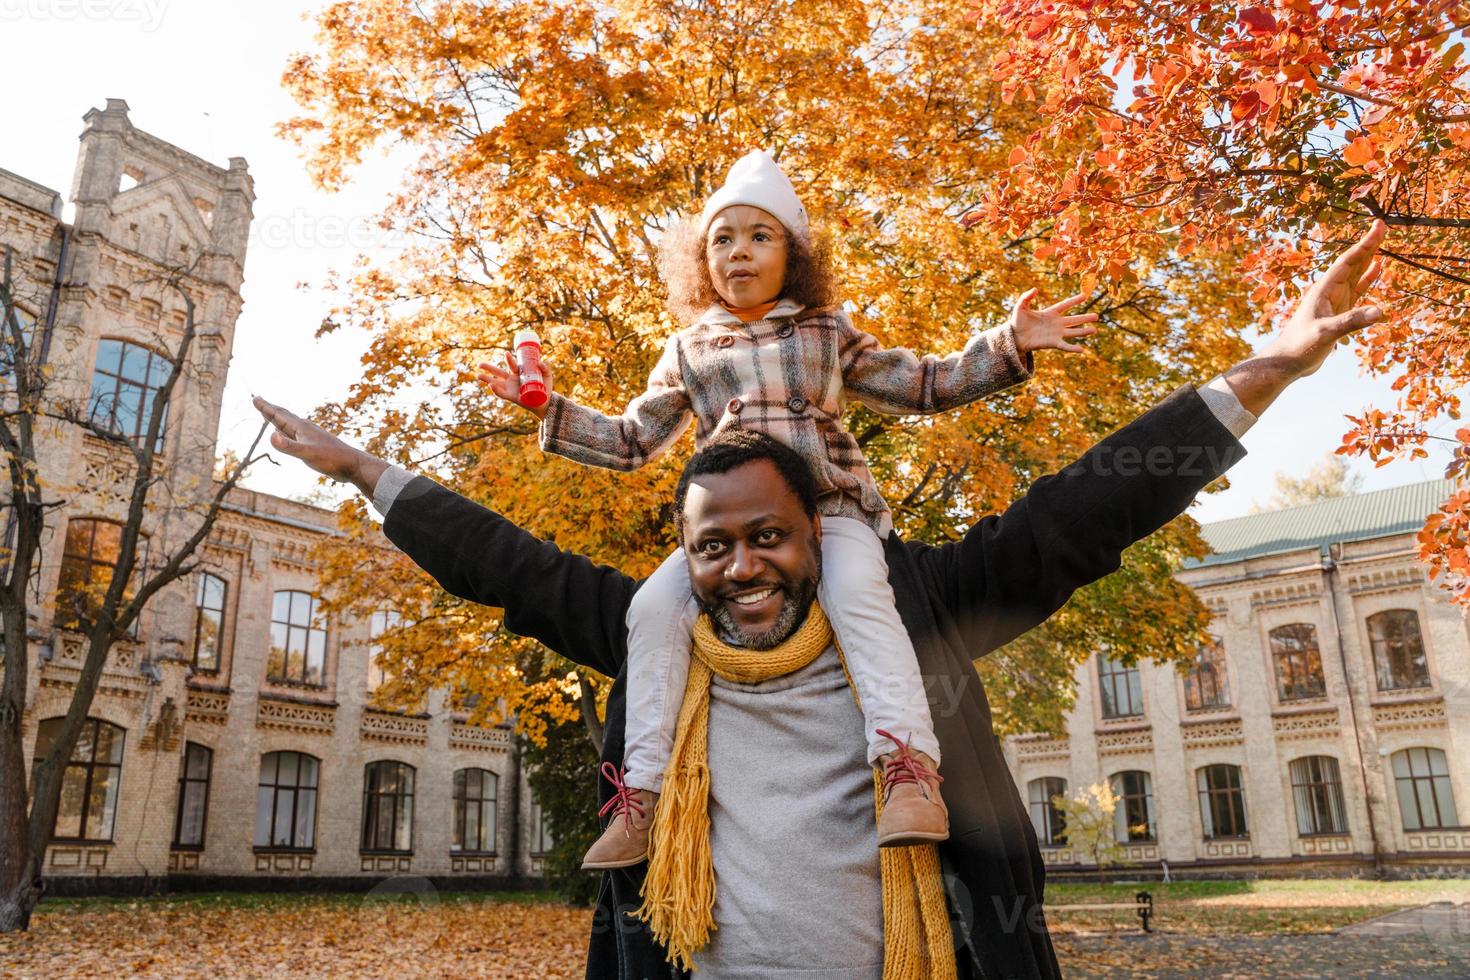 fille noire s'amusant et assise sur le cou de son grand-père dans le parc d'automne photo